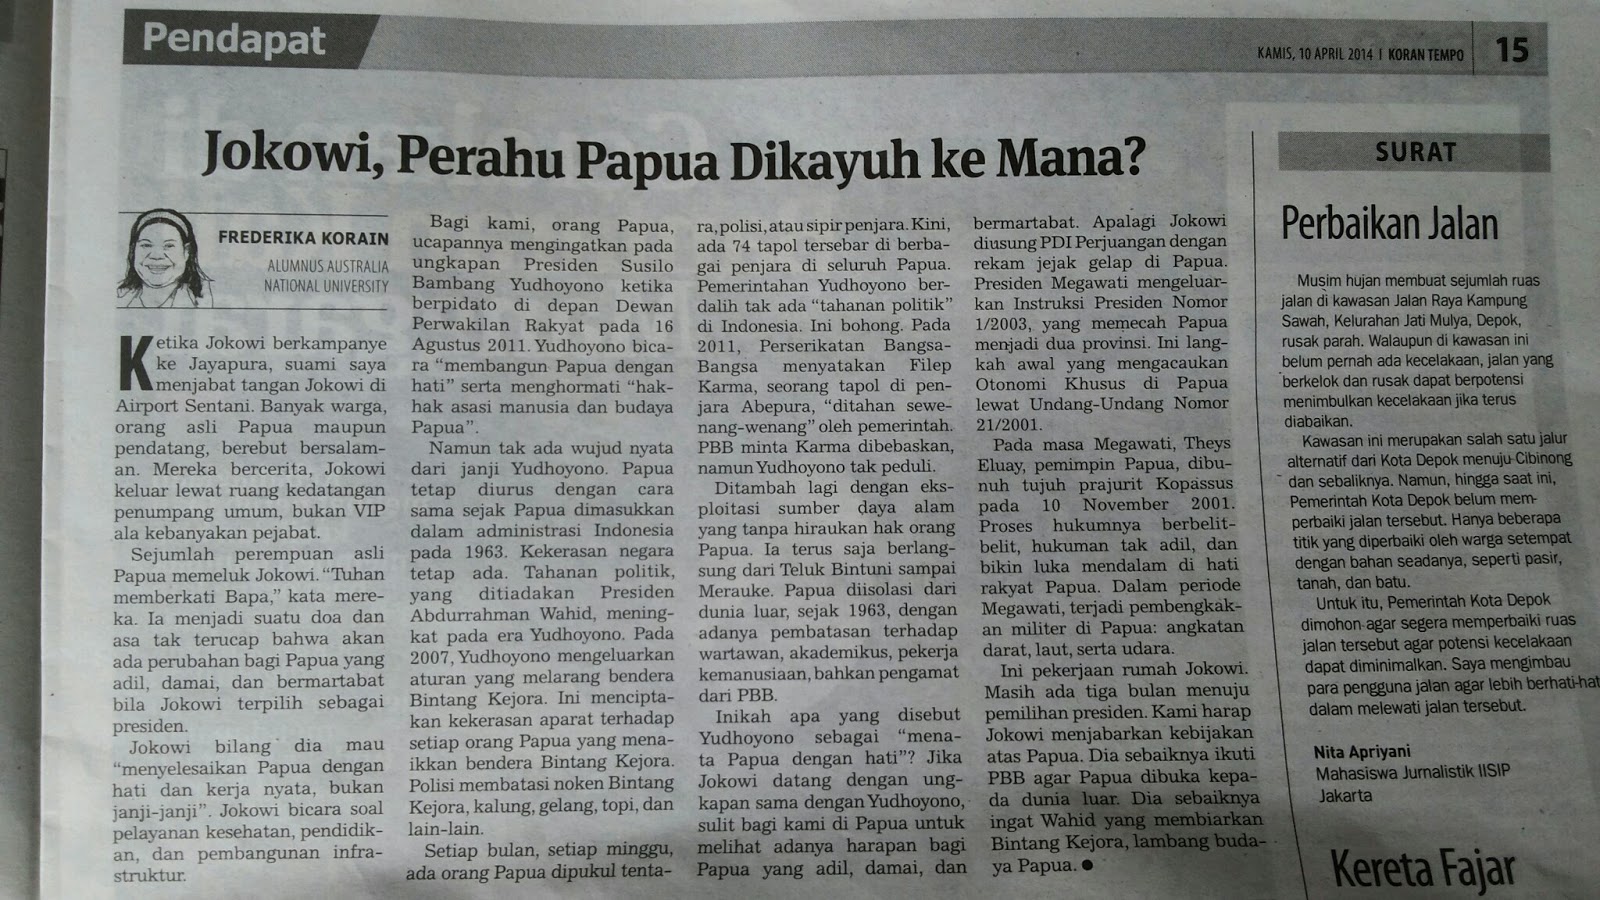 Andreas Harsono: Jokowi, Perahu Papua Dikayuh ke Mana?